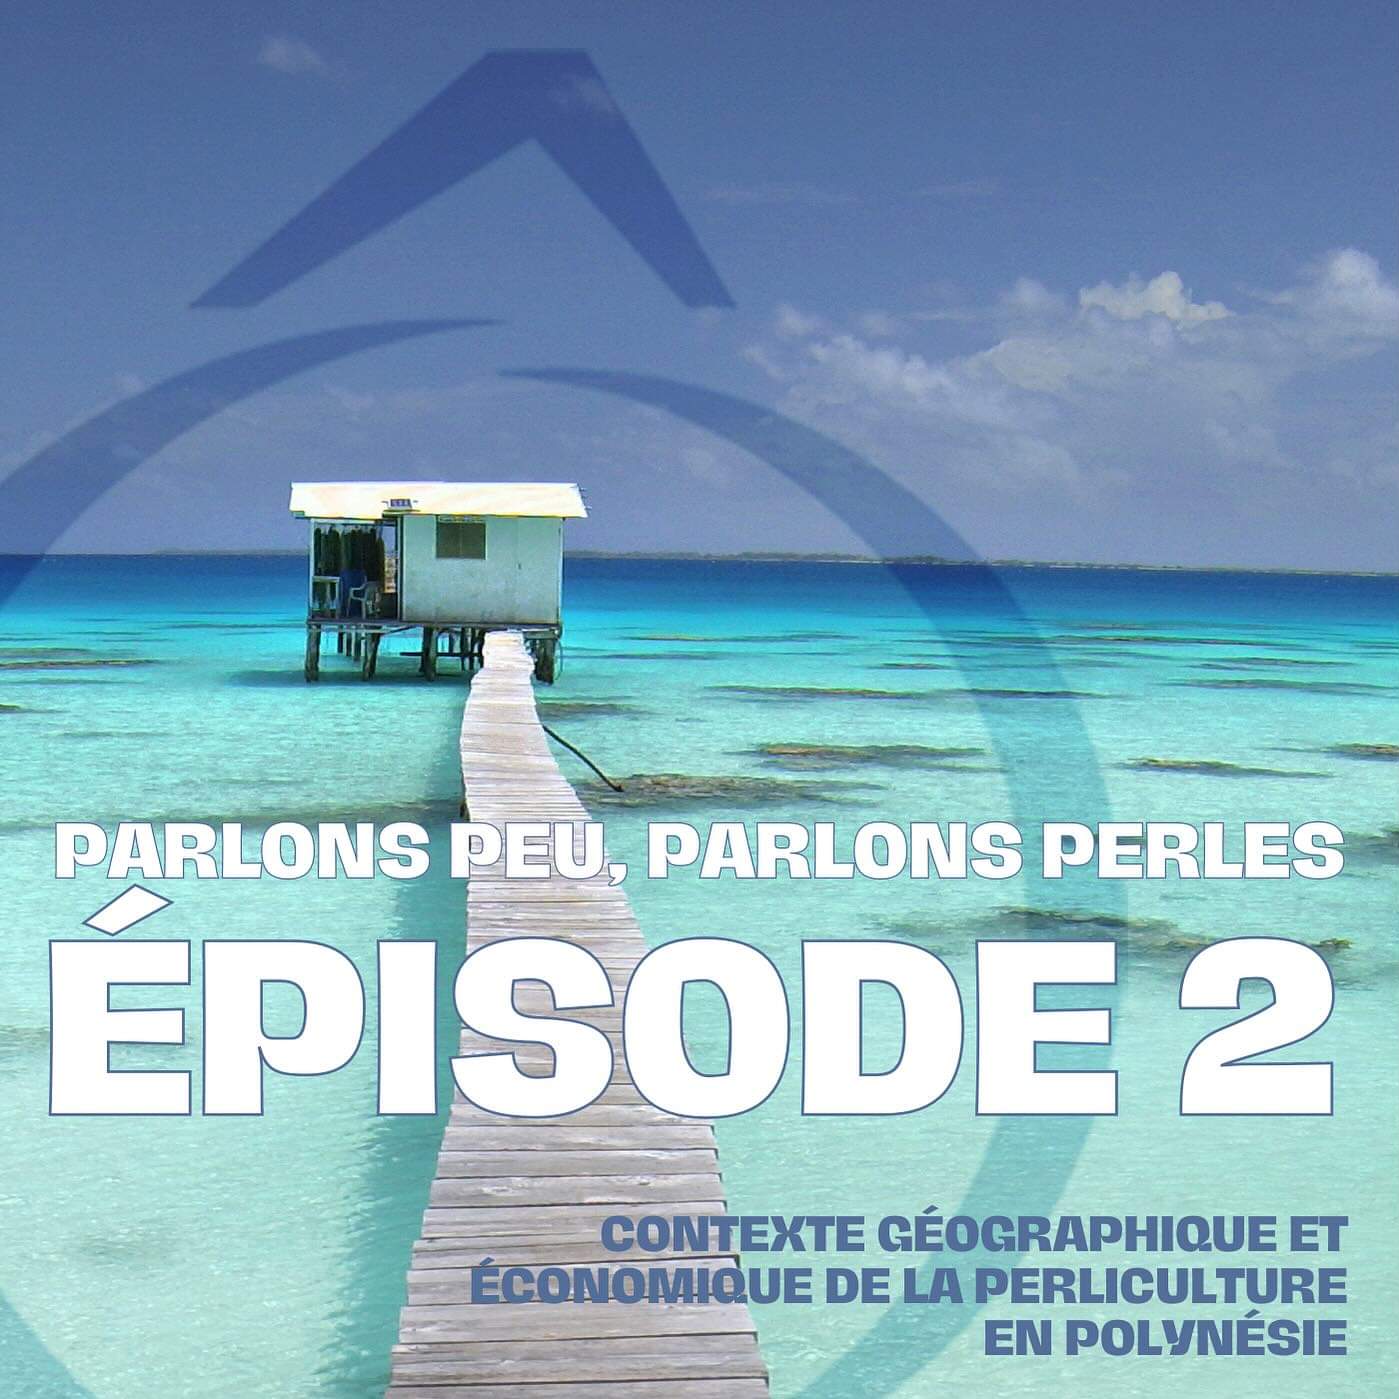 Découvrez les spécificités géographiques, écologiques et économiques de la perliculture polynésienne - Episode 2